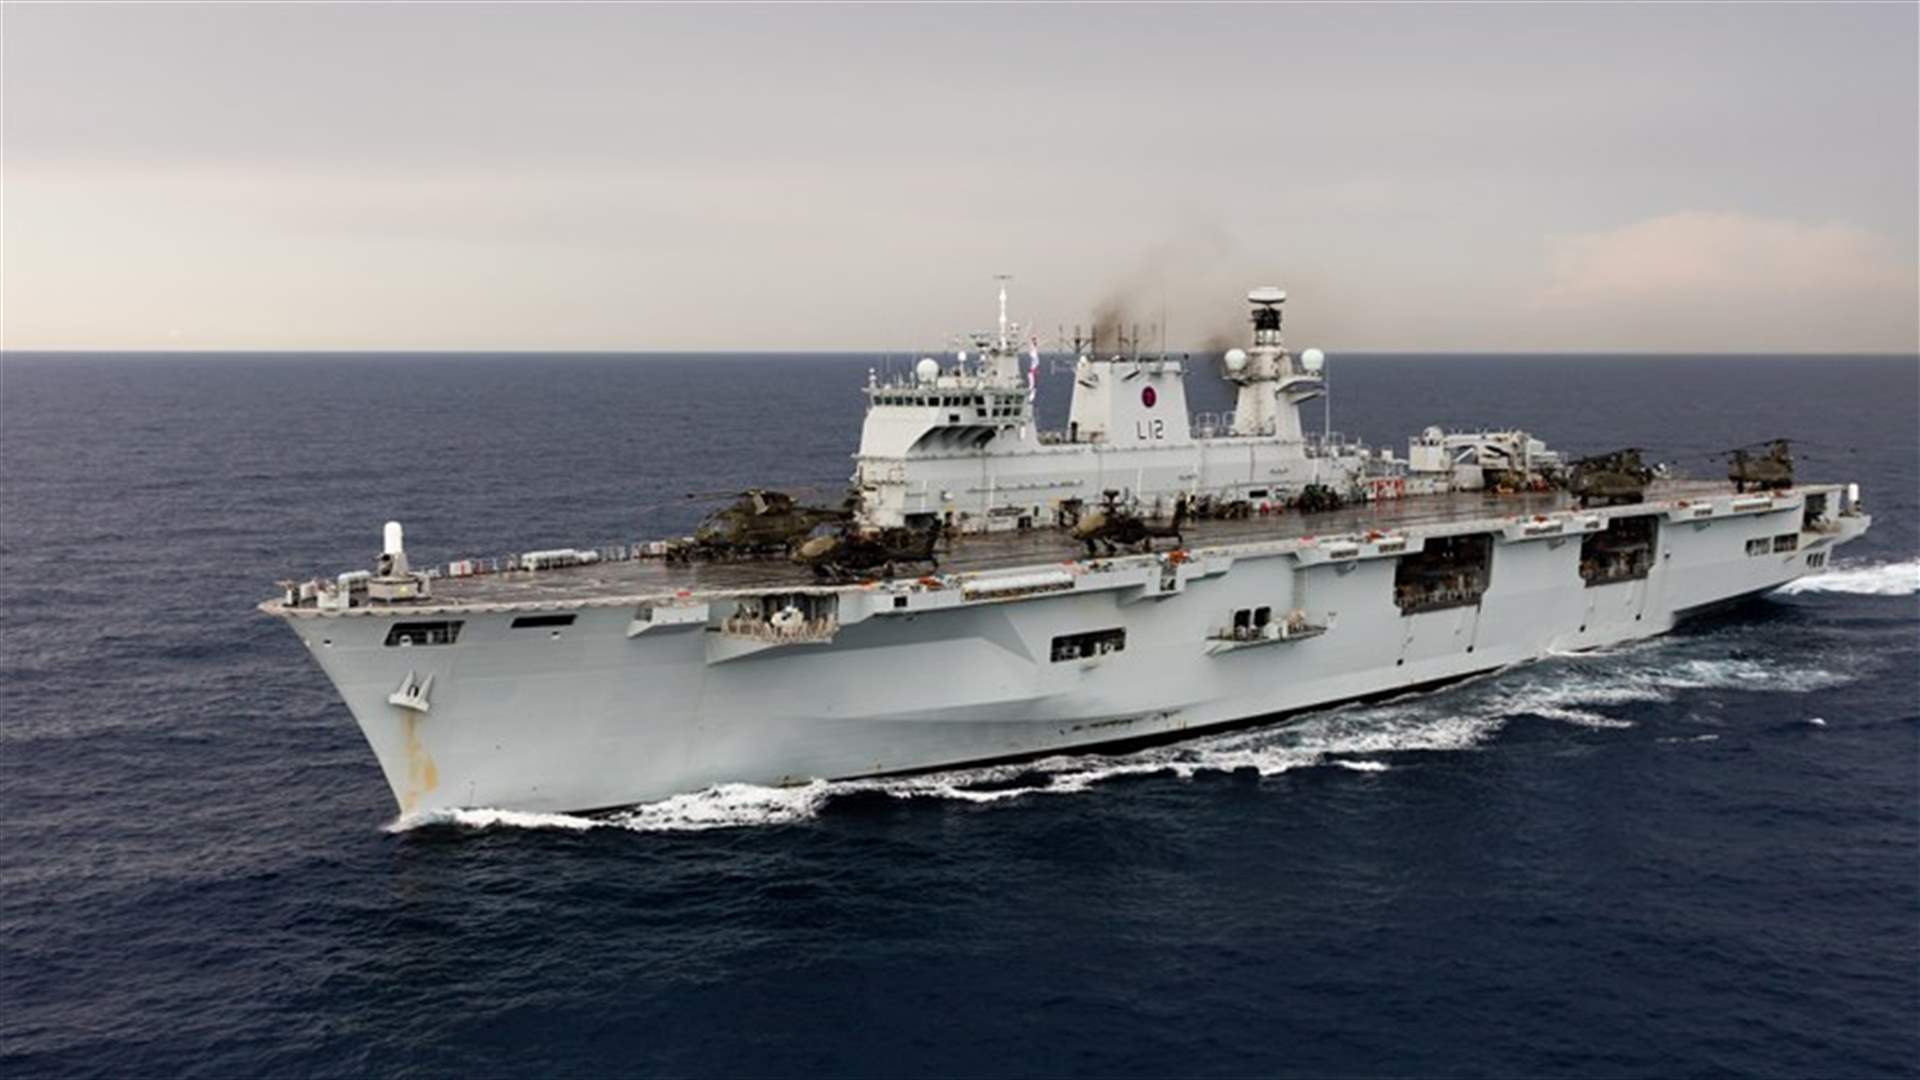 حاملة الطوافات البحرية البريطانية في لبنان الاسبوع المقبل